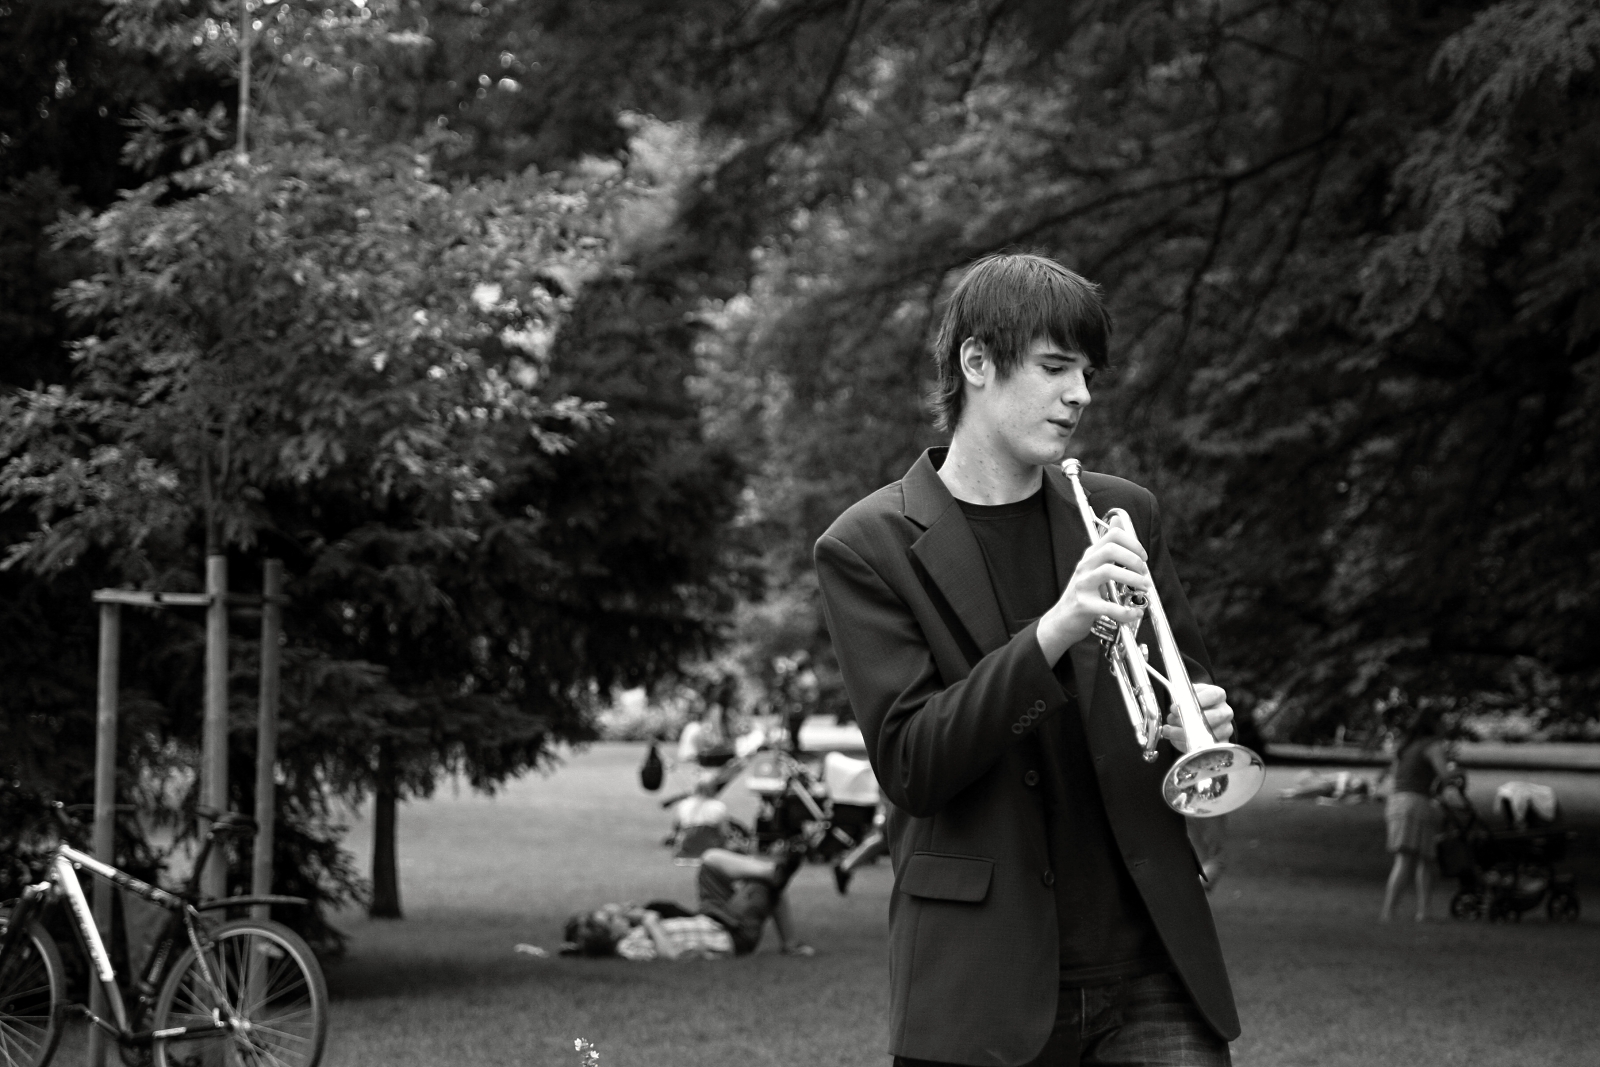 Muzikant v parku